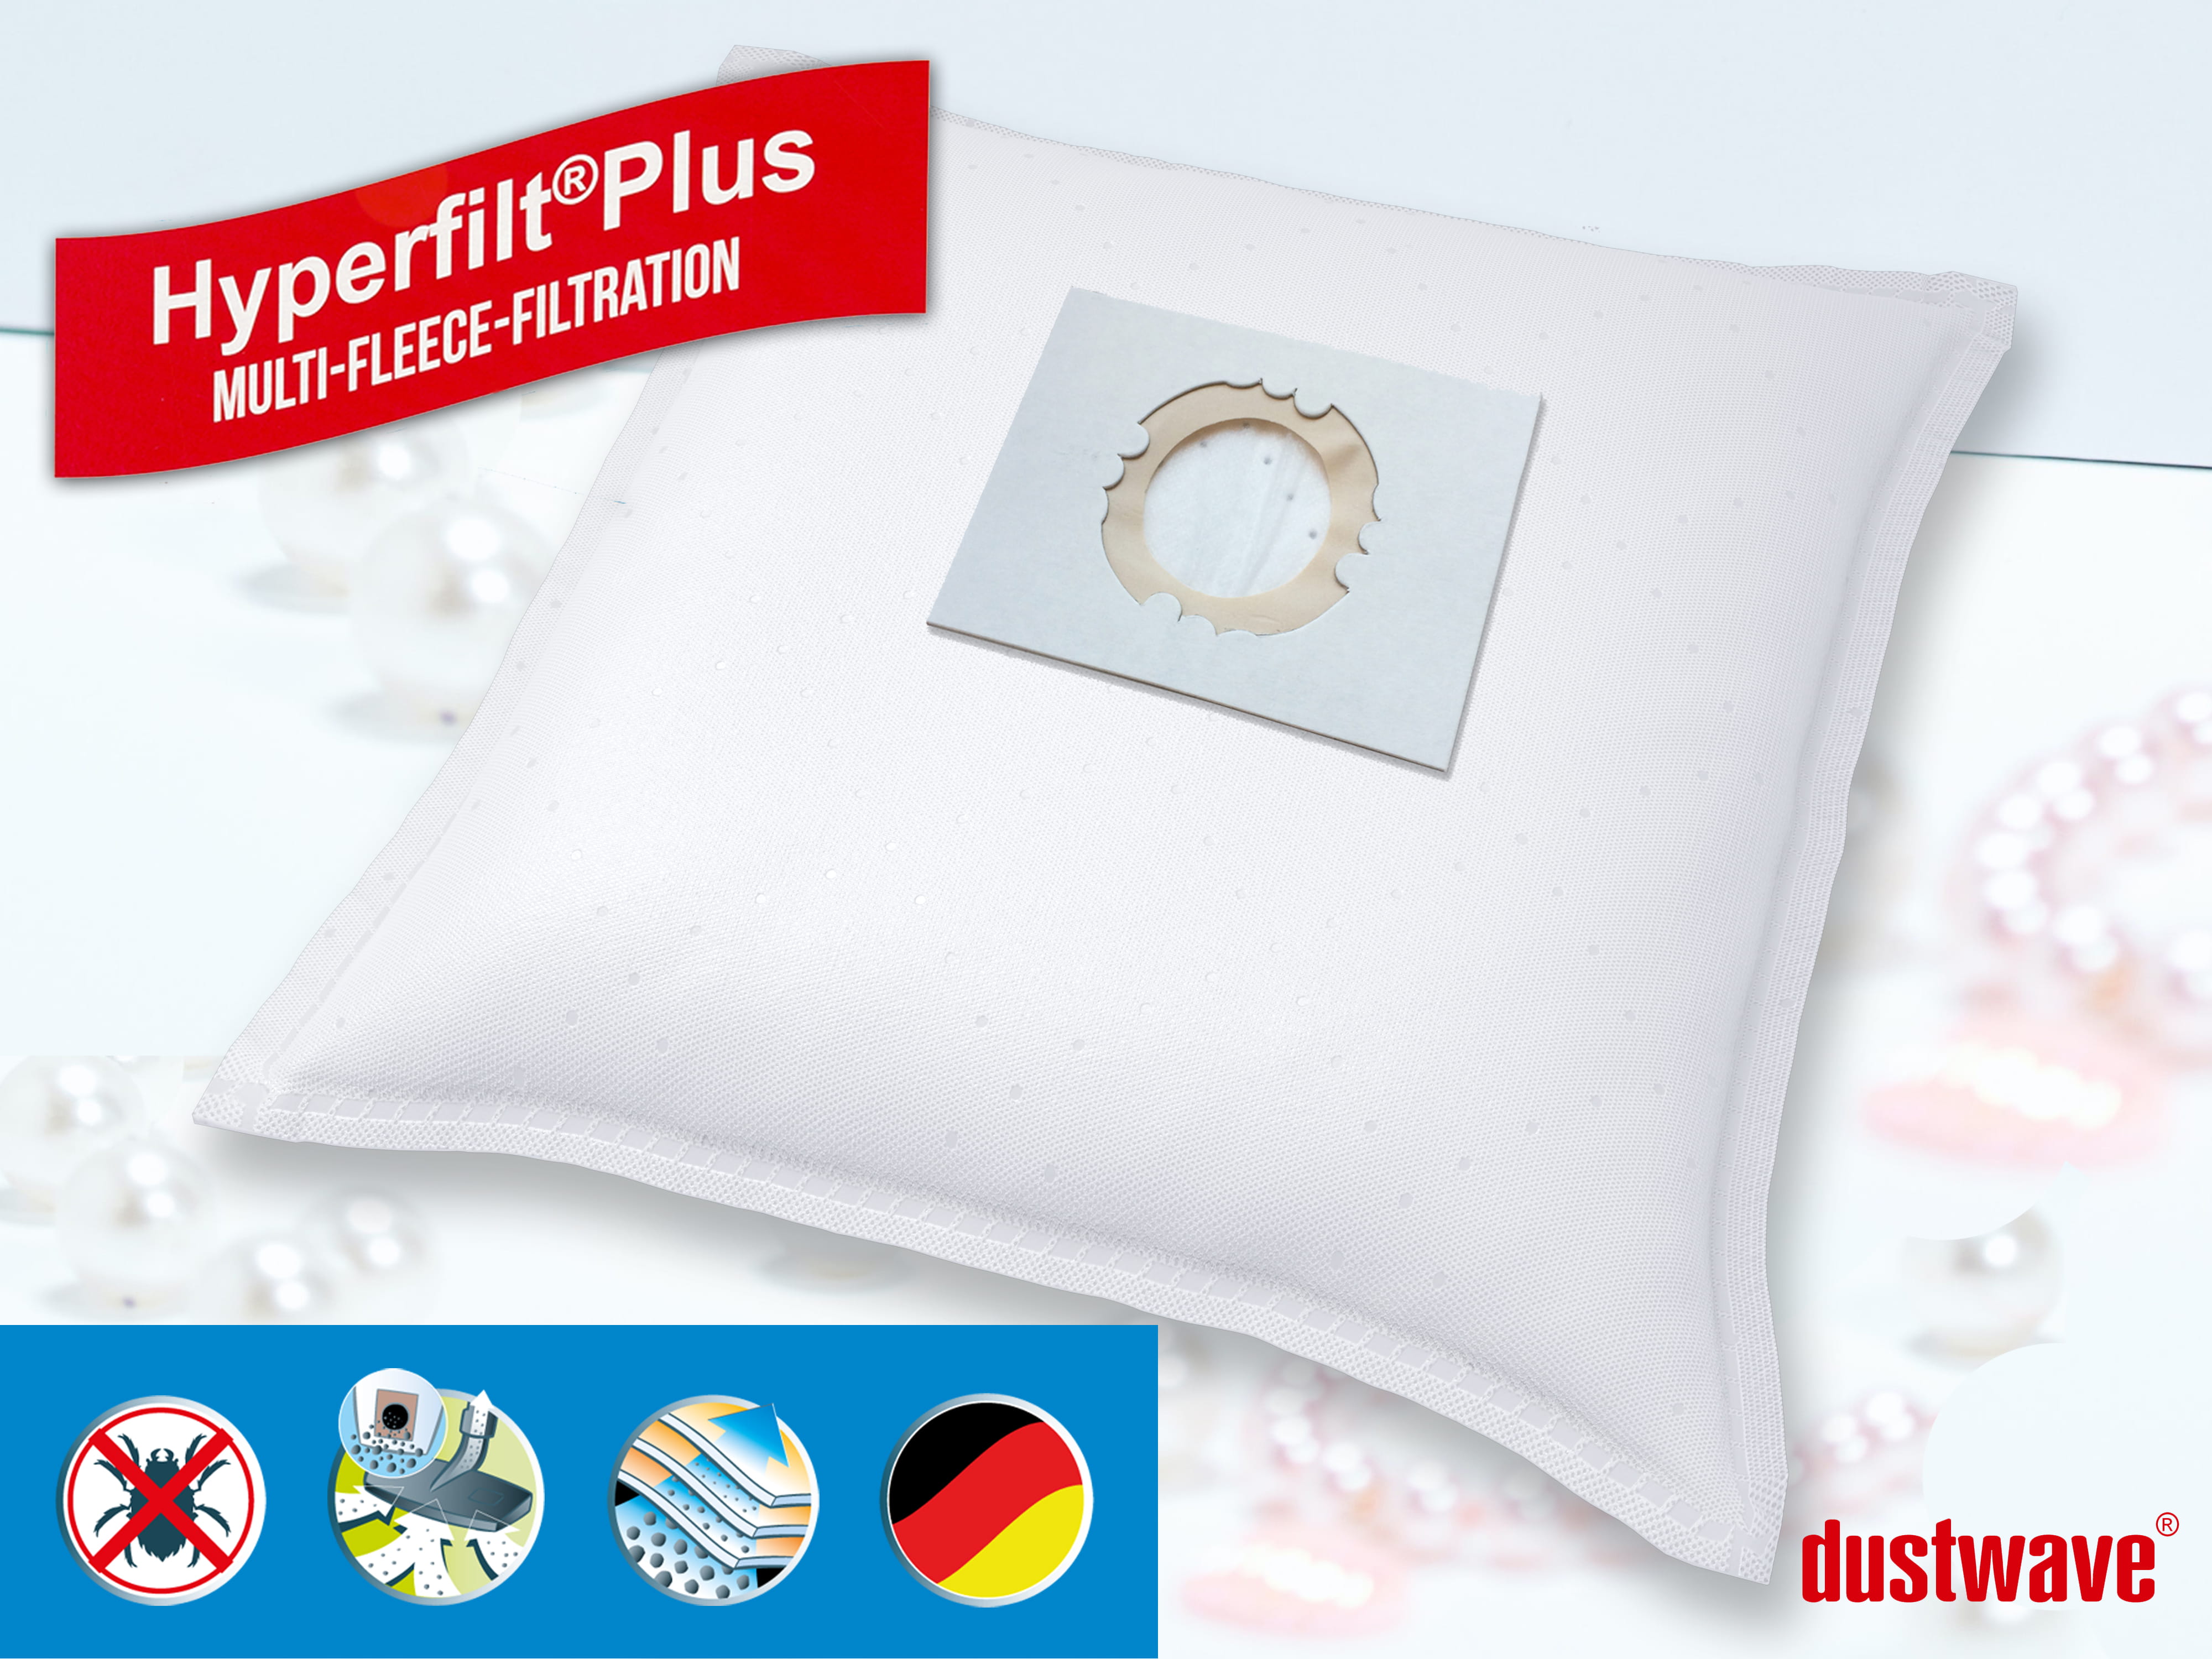 Dustwave® 1 Staubsaugerbeutel für Base BA 2585 - hocheffizient, mehrlagiges Mikrovlies mit Hygieneverschluss - Made in Germany